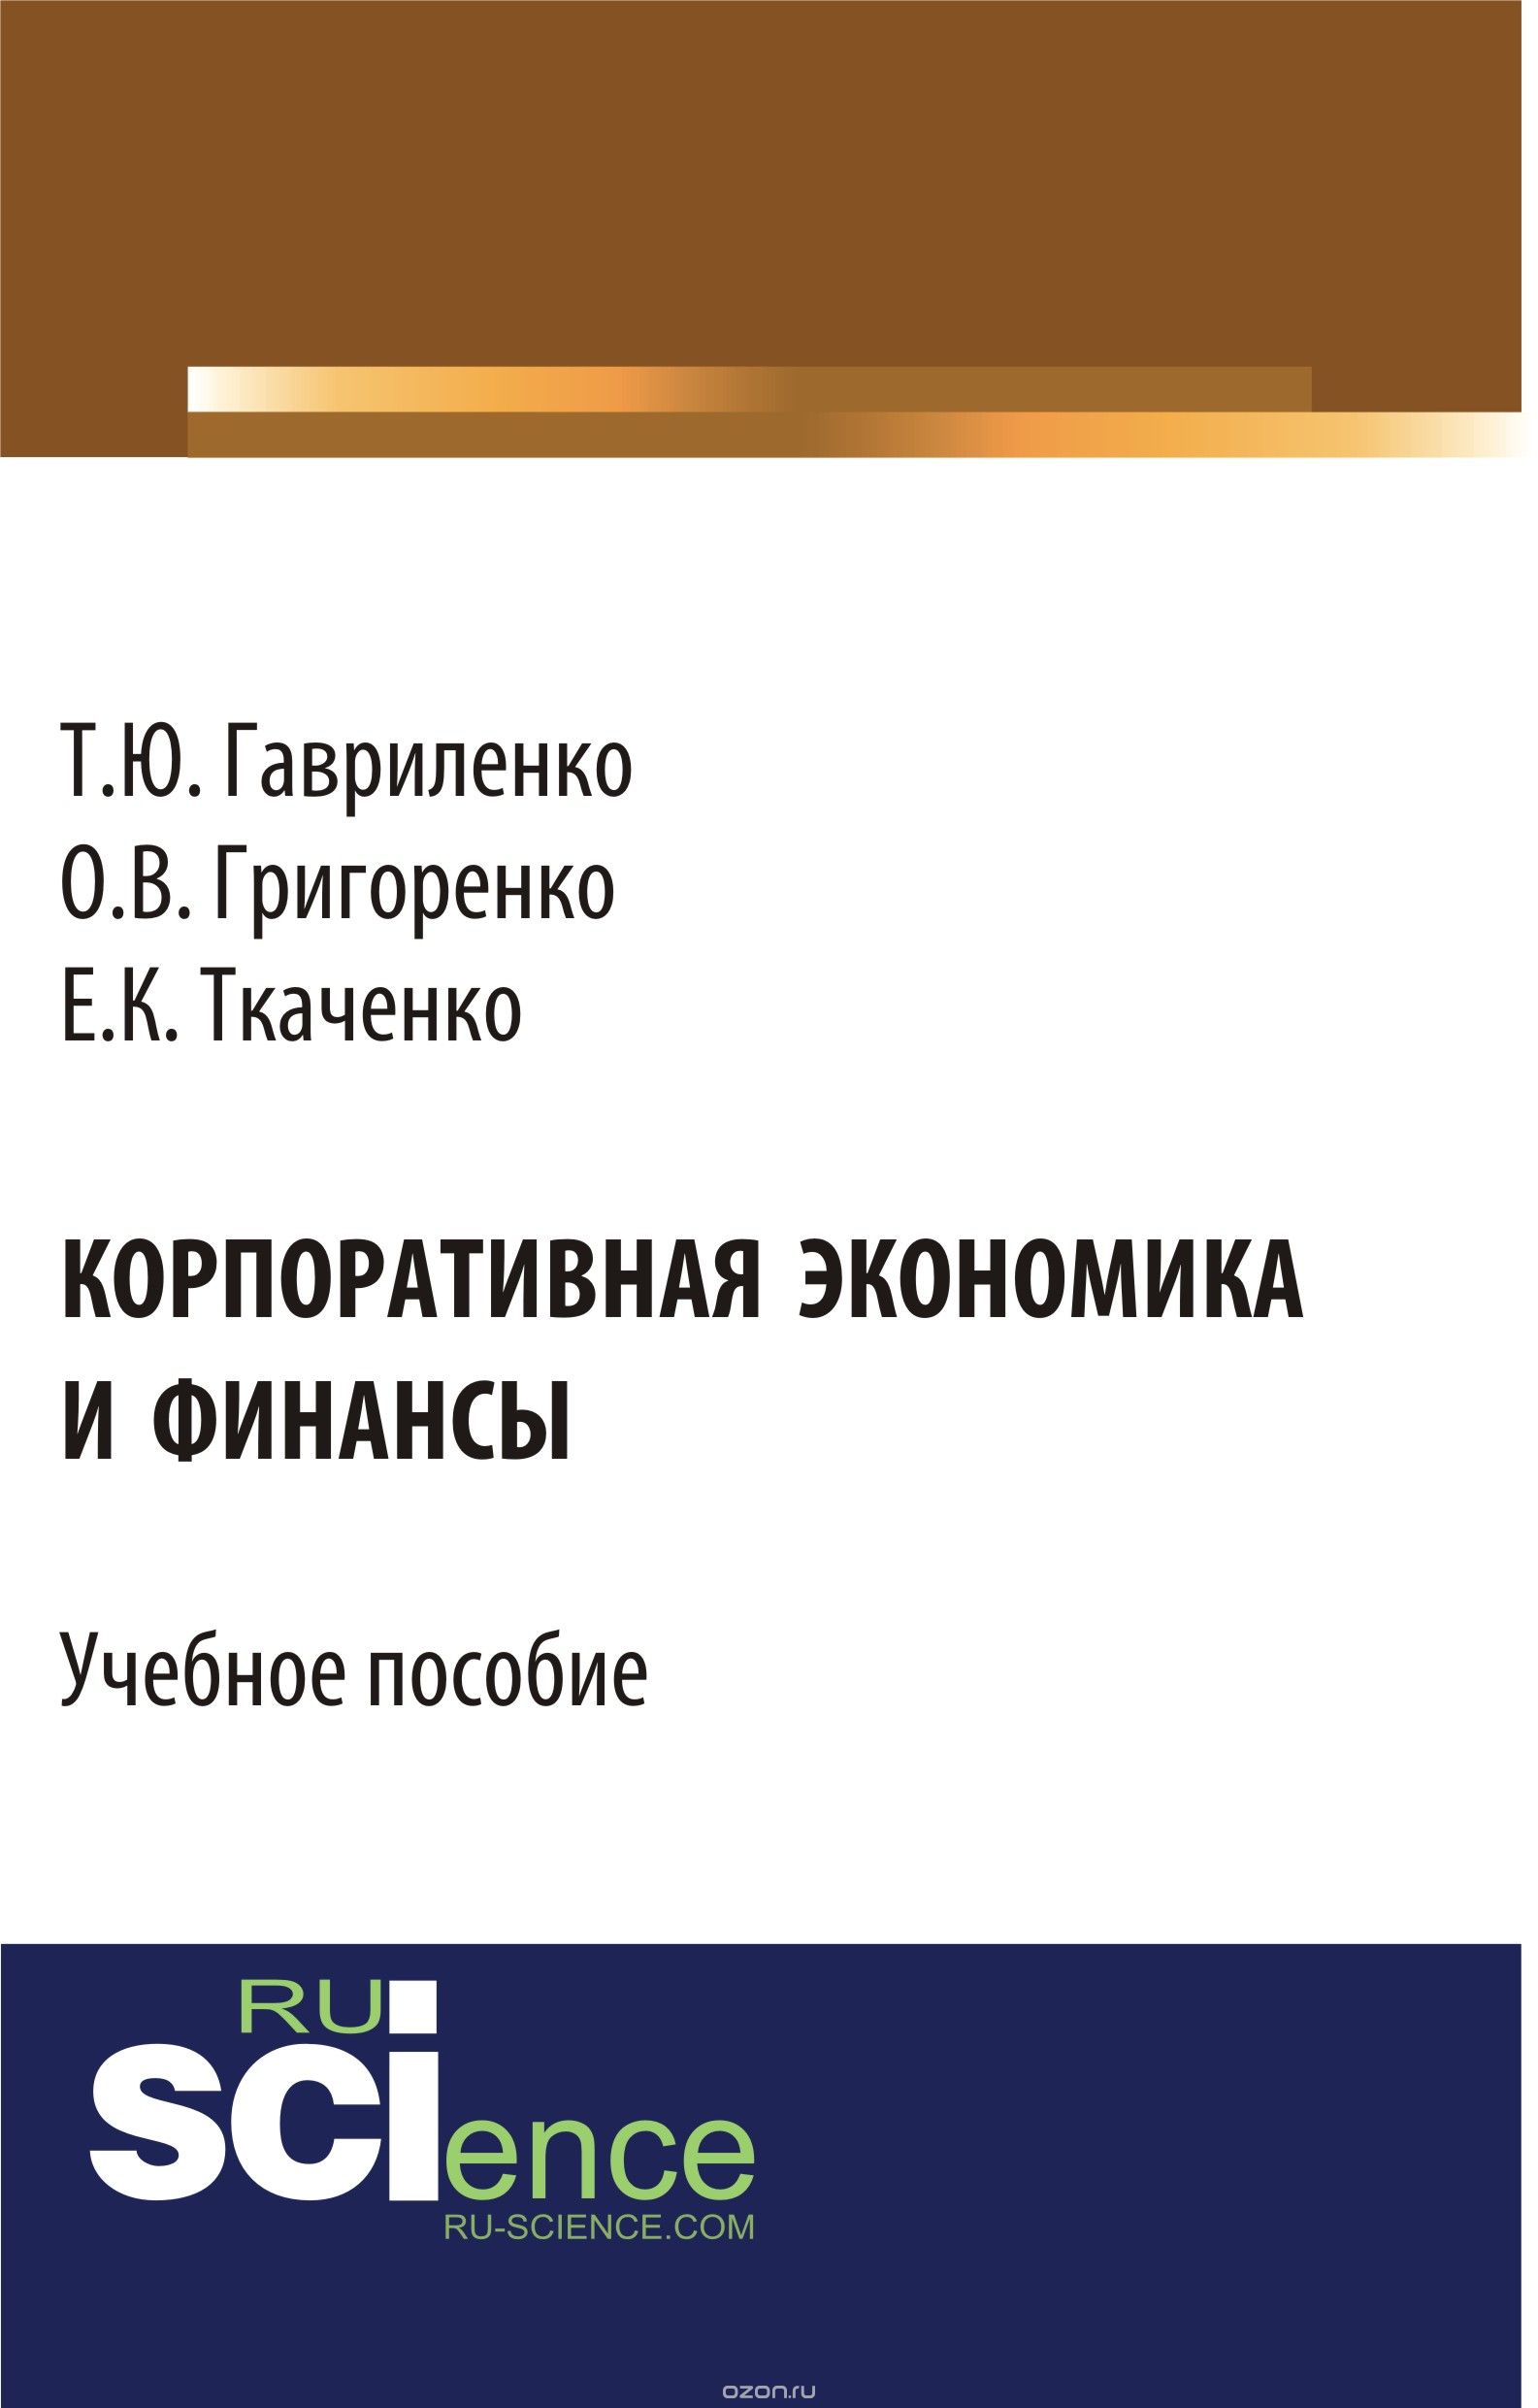 Скачать книгу "Корпоративная экономика и финансы, Т. Ю. Гавриленко, О. В. Григоренко, Е. К. Ткаченко"